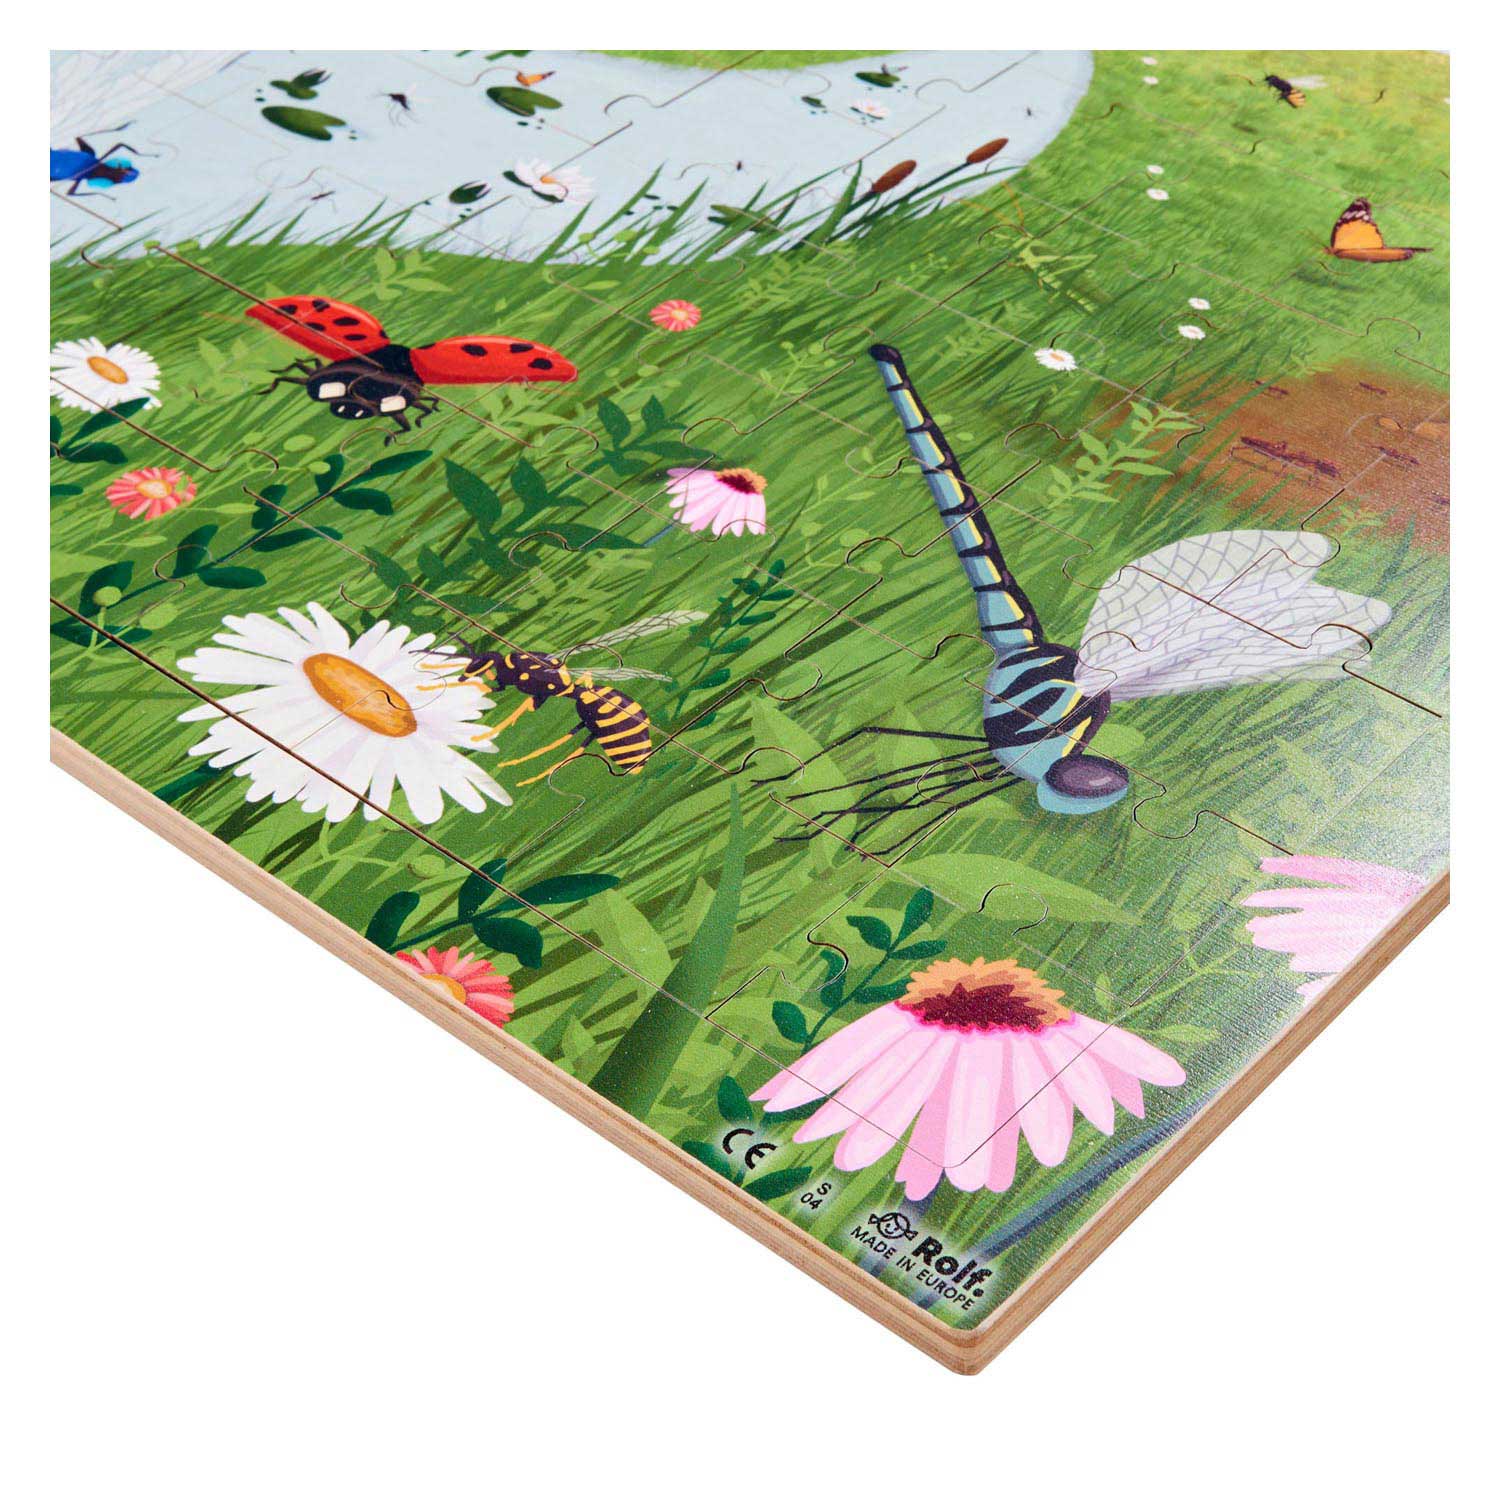 Rolf - Puzzle en bois Jardin d'insectes, 72 pcs.